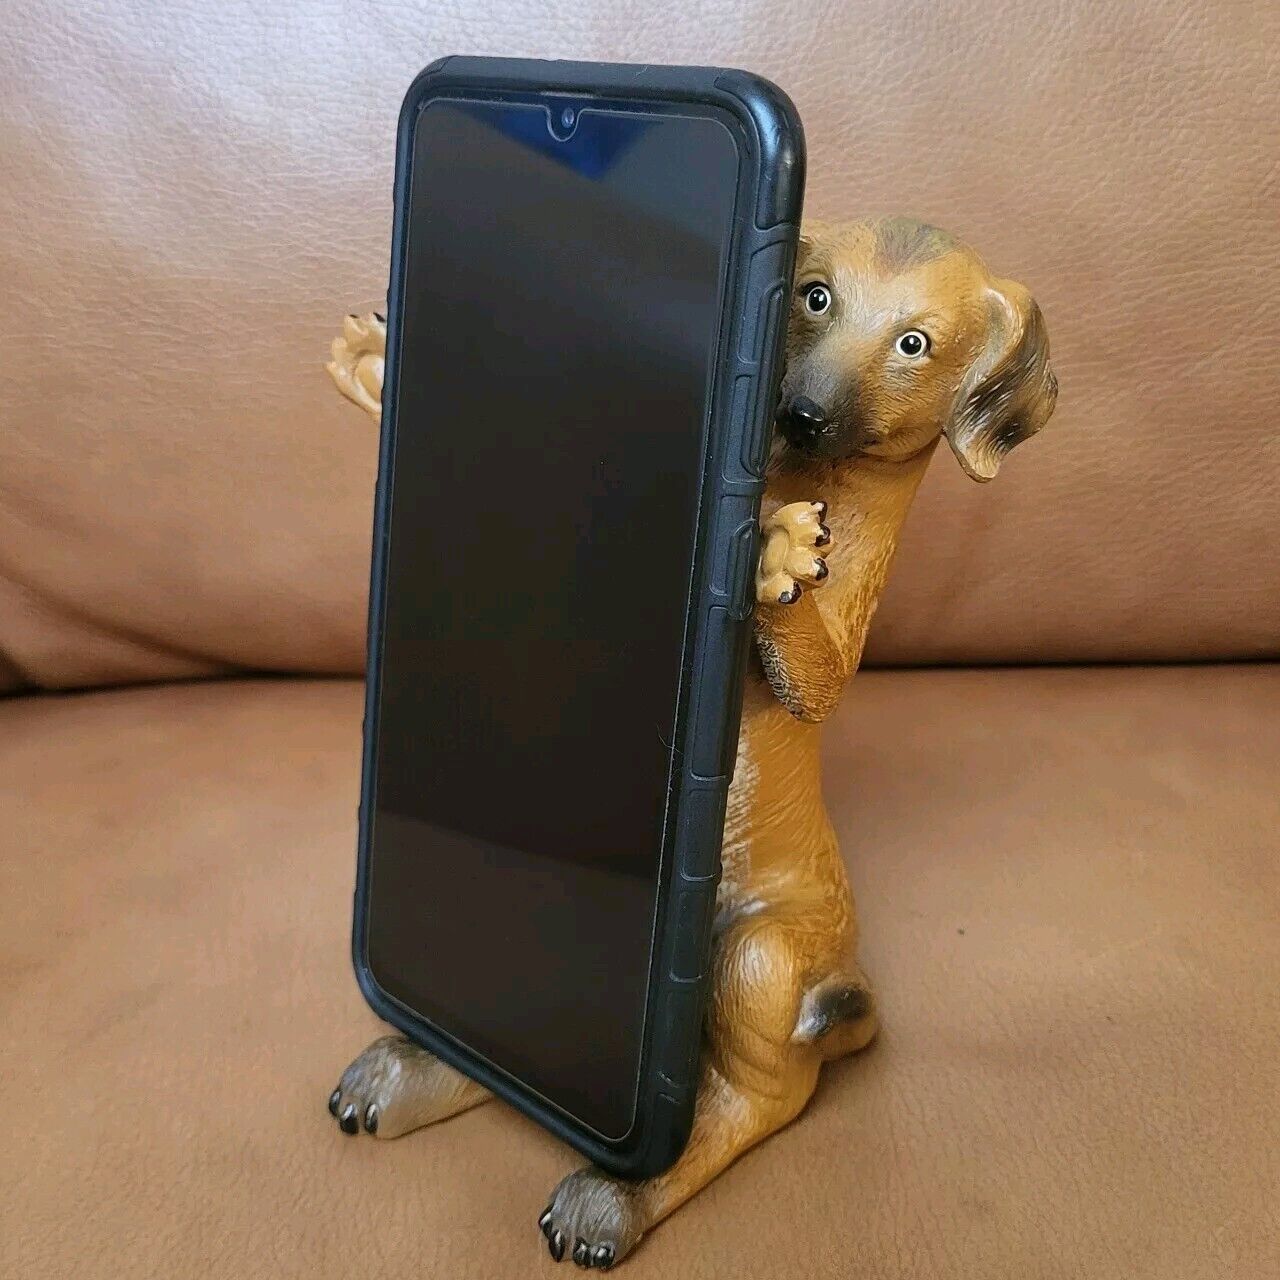 Daushound Weiner Dog Cell Phone Holder Figurine Hot Dog Puppy Cute Mobile Stand